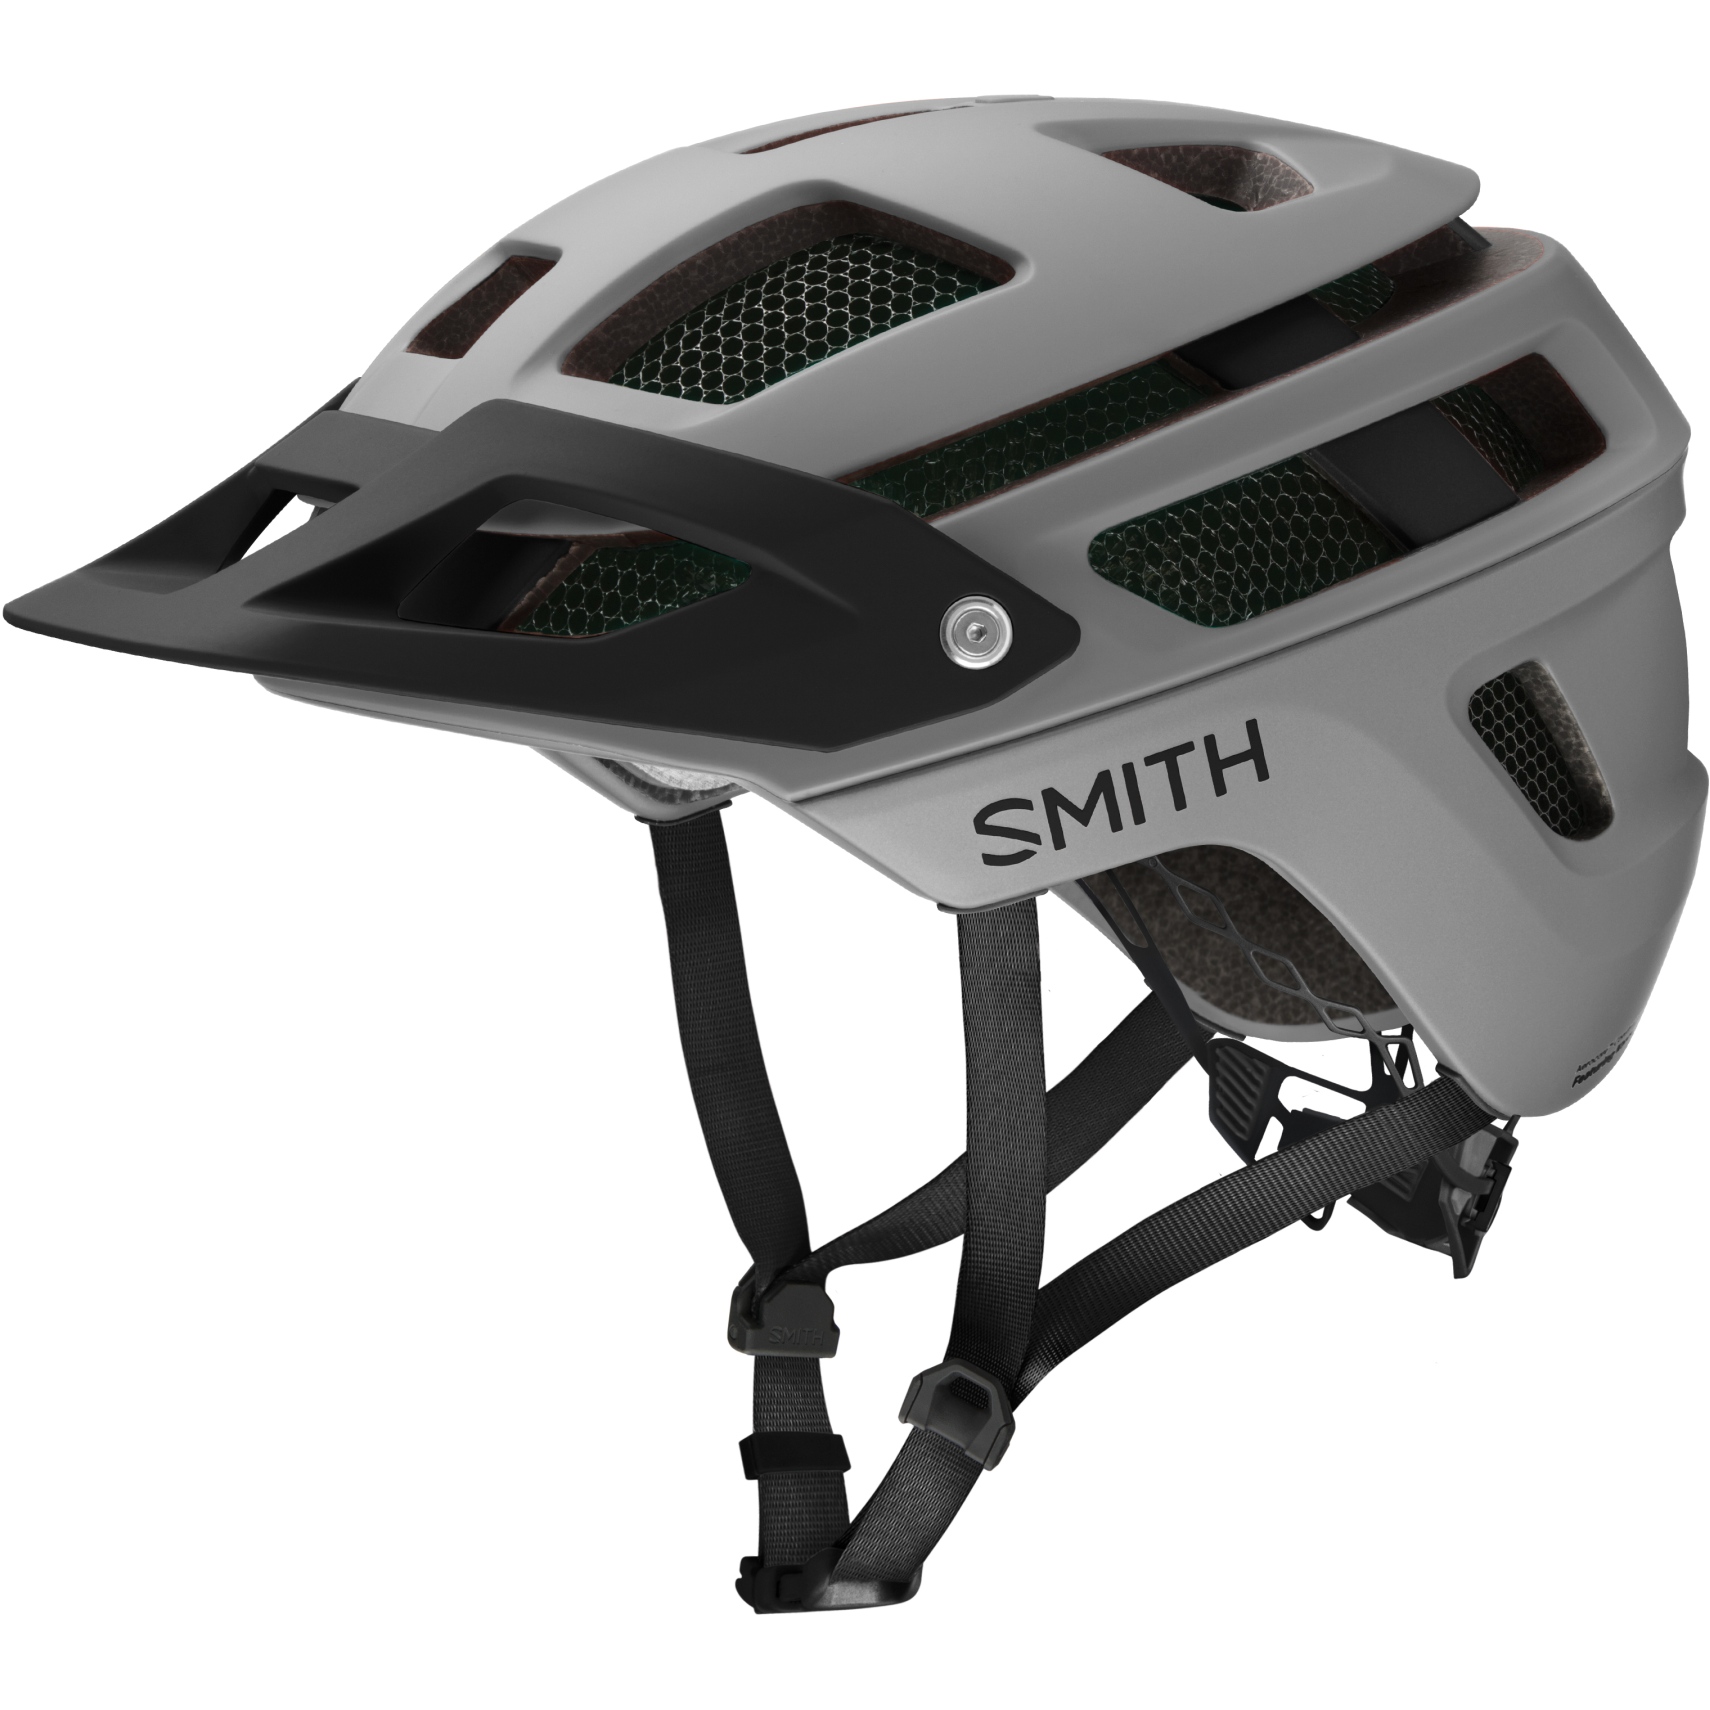 Produktbild von Smith Forefront 2 MIPS Fahrradhelm - Matte Cloudgrey